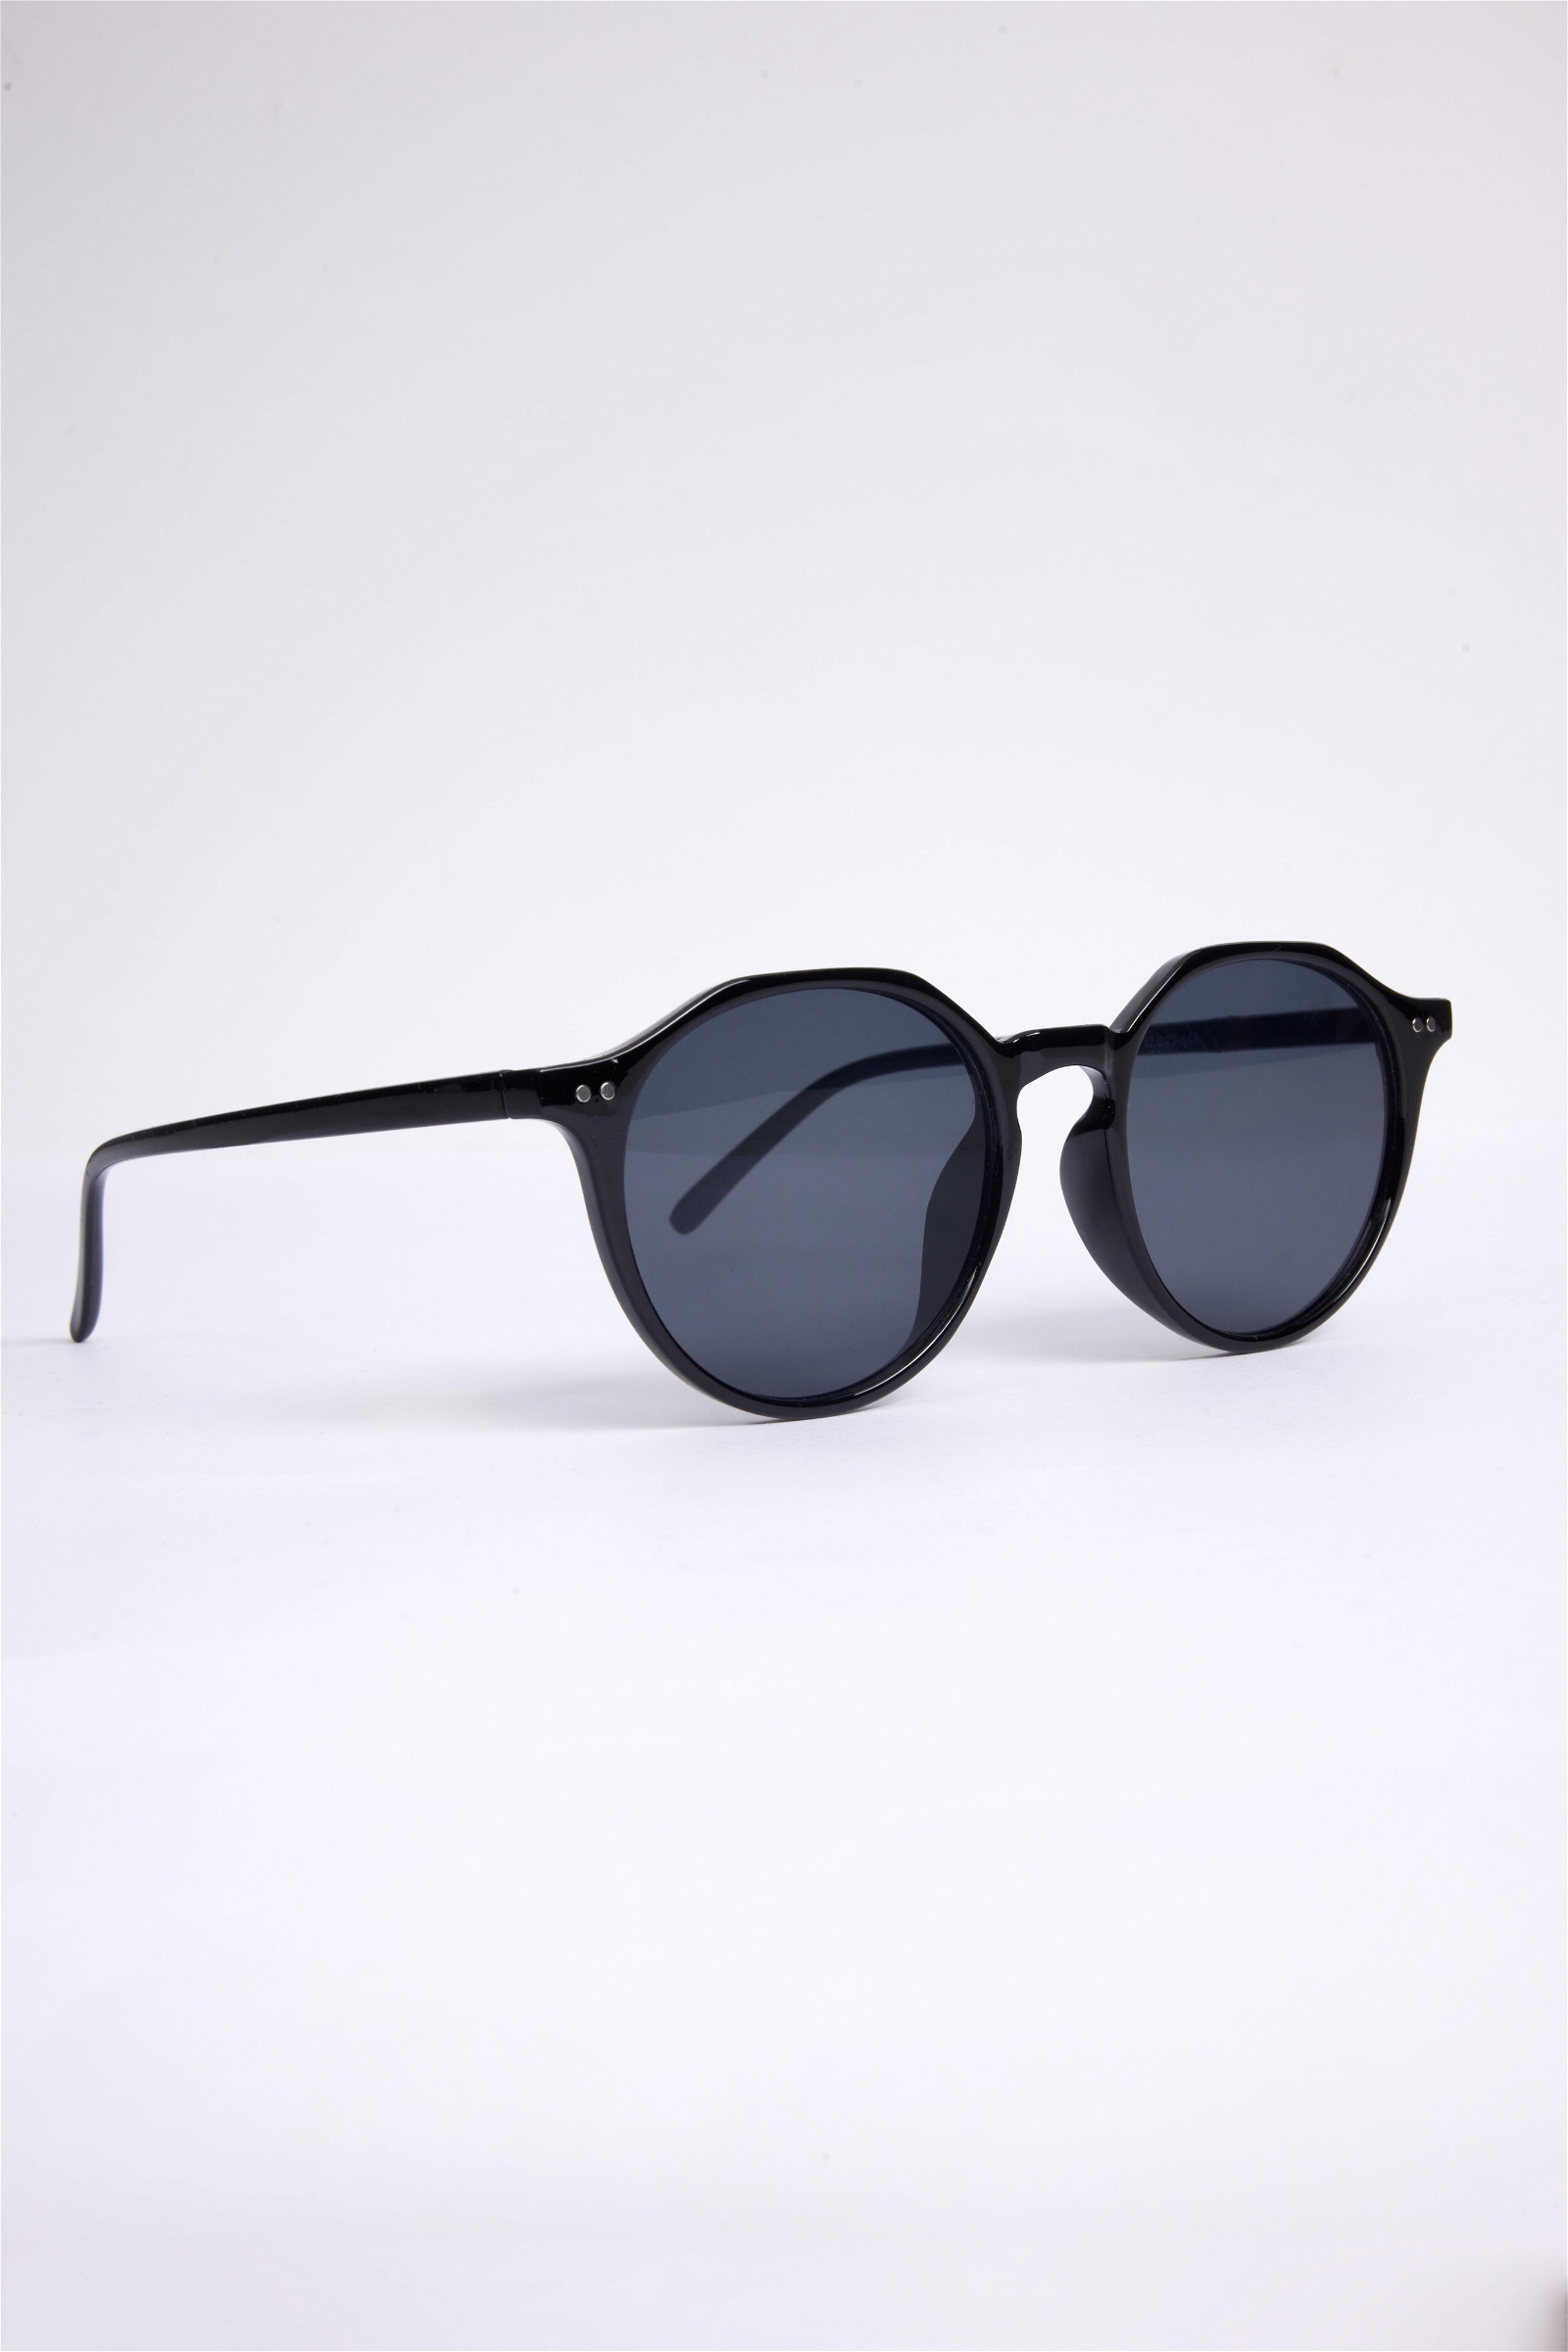 Plain Black Sunglasses